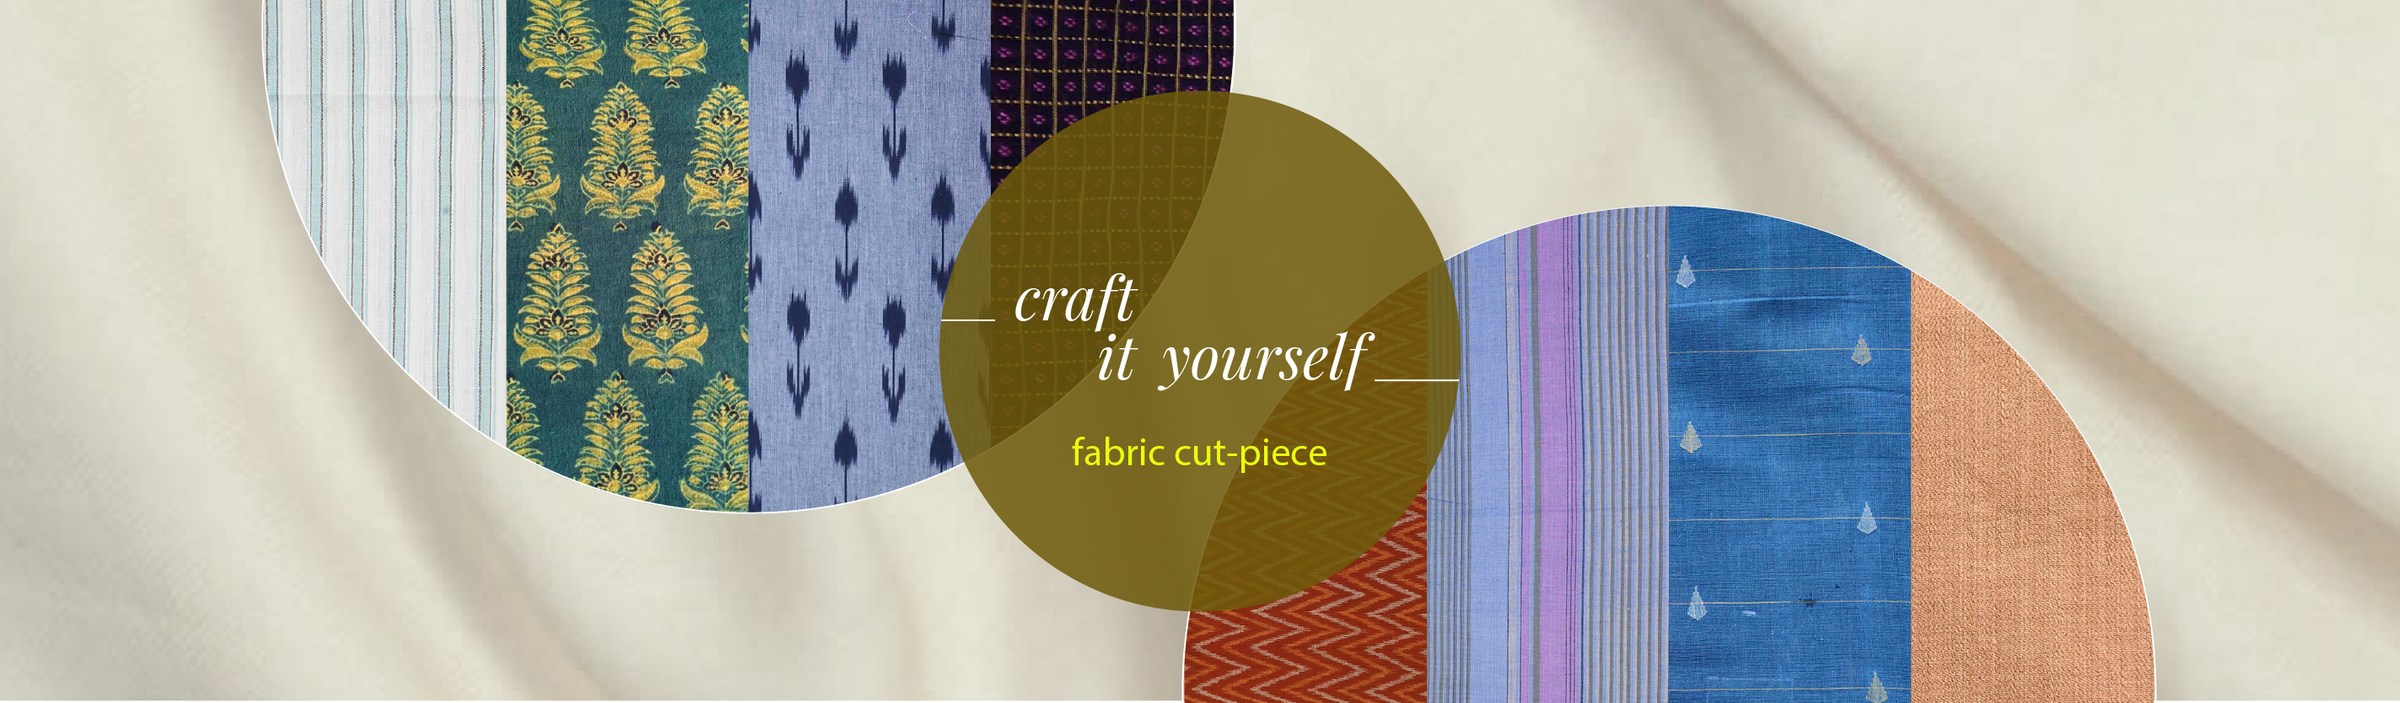 Cut piece fabrics